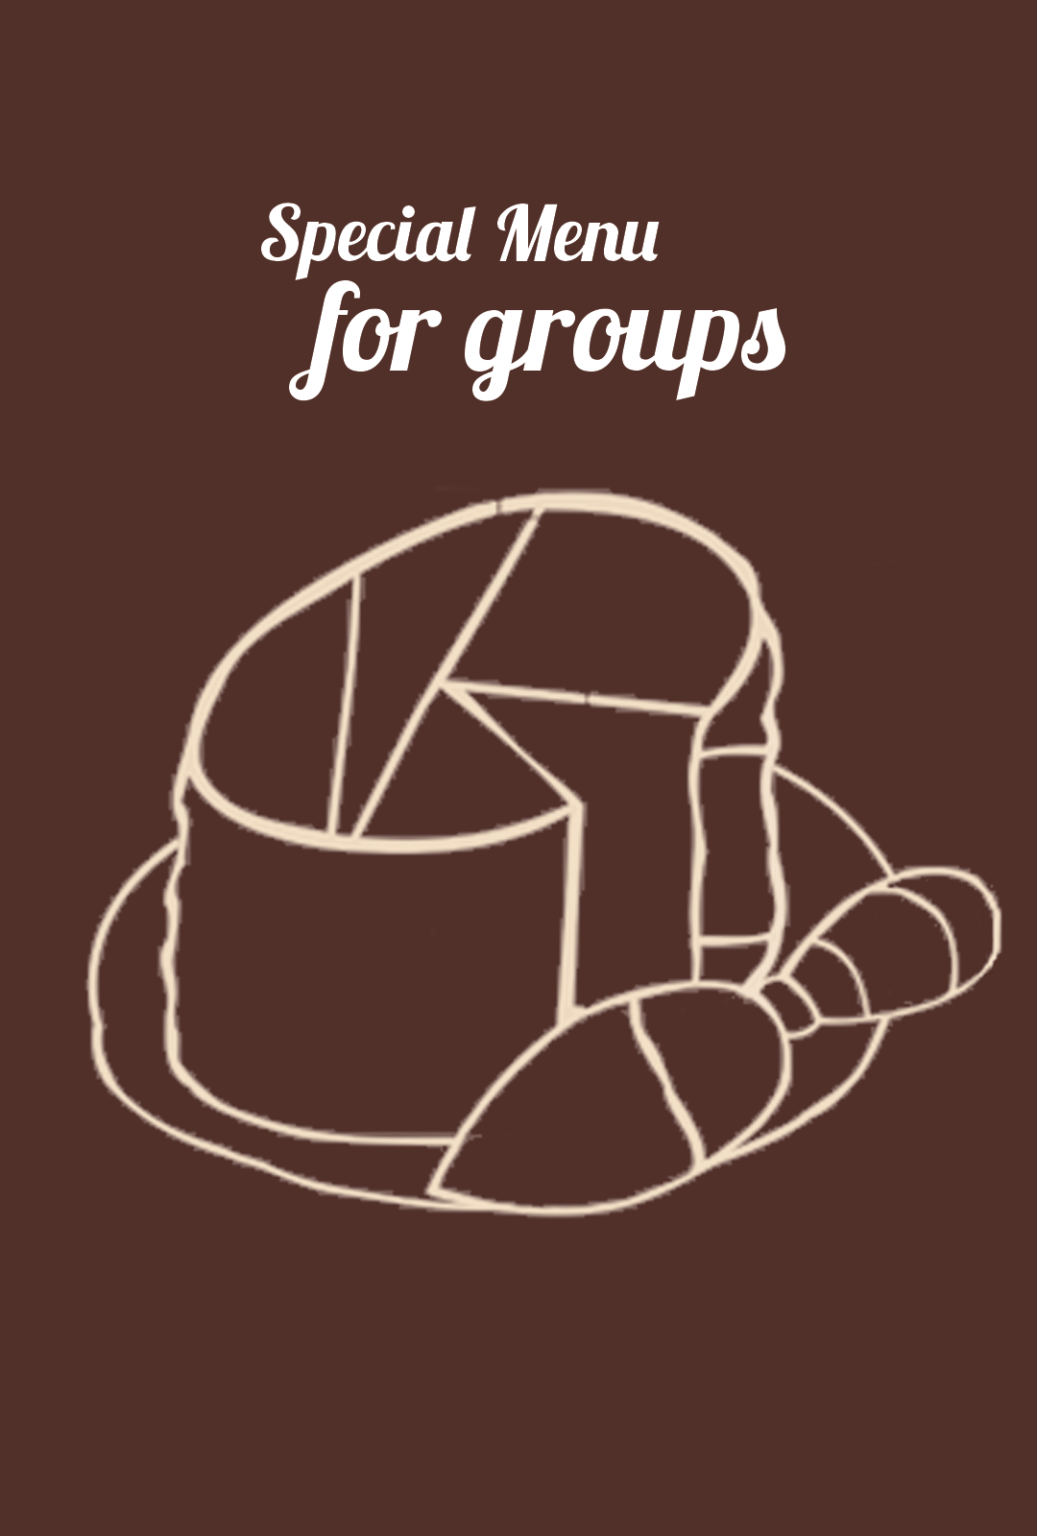 menu for groups selector